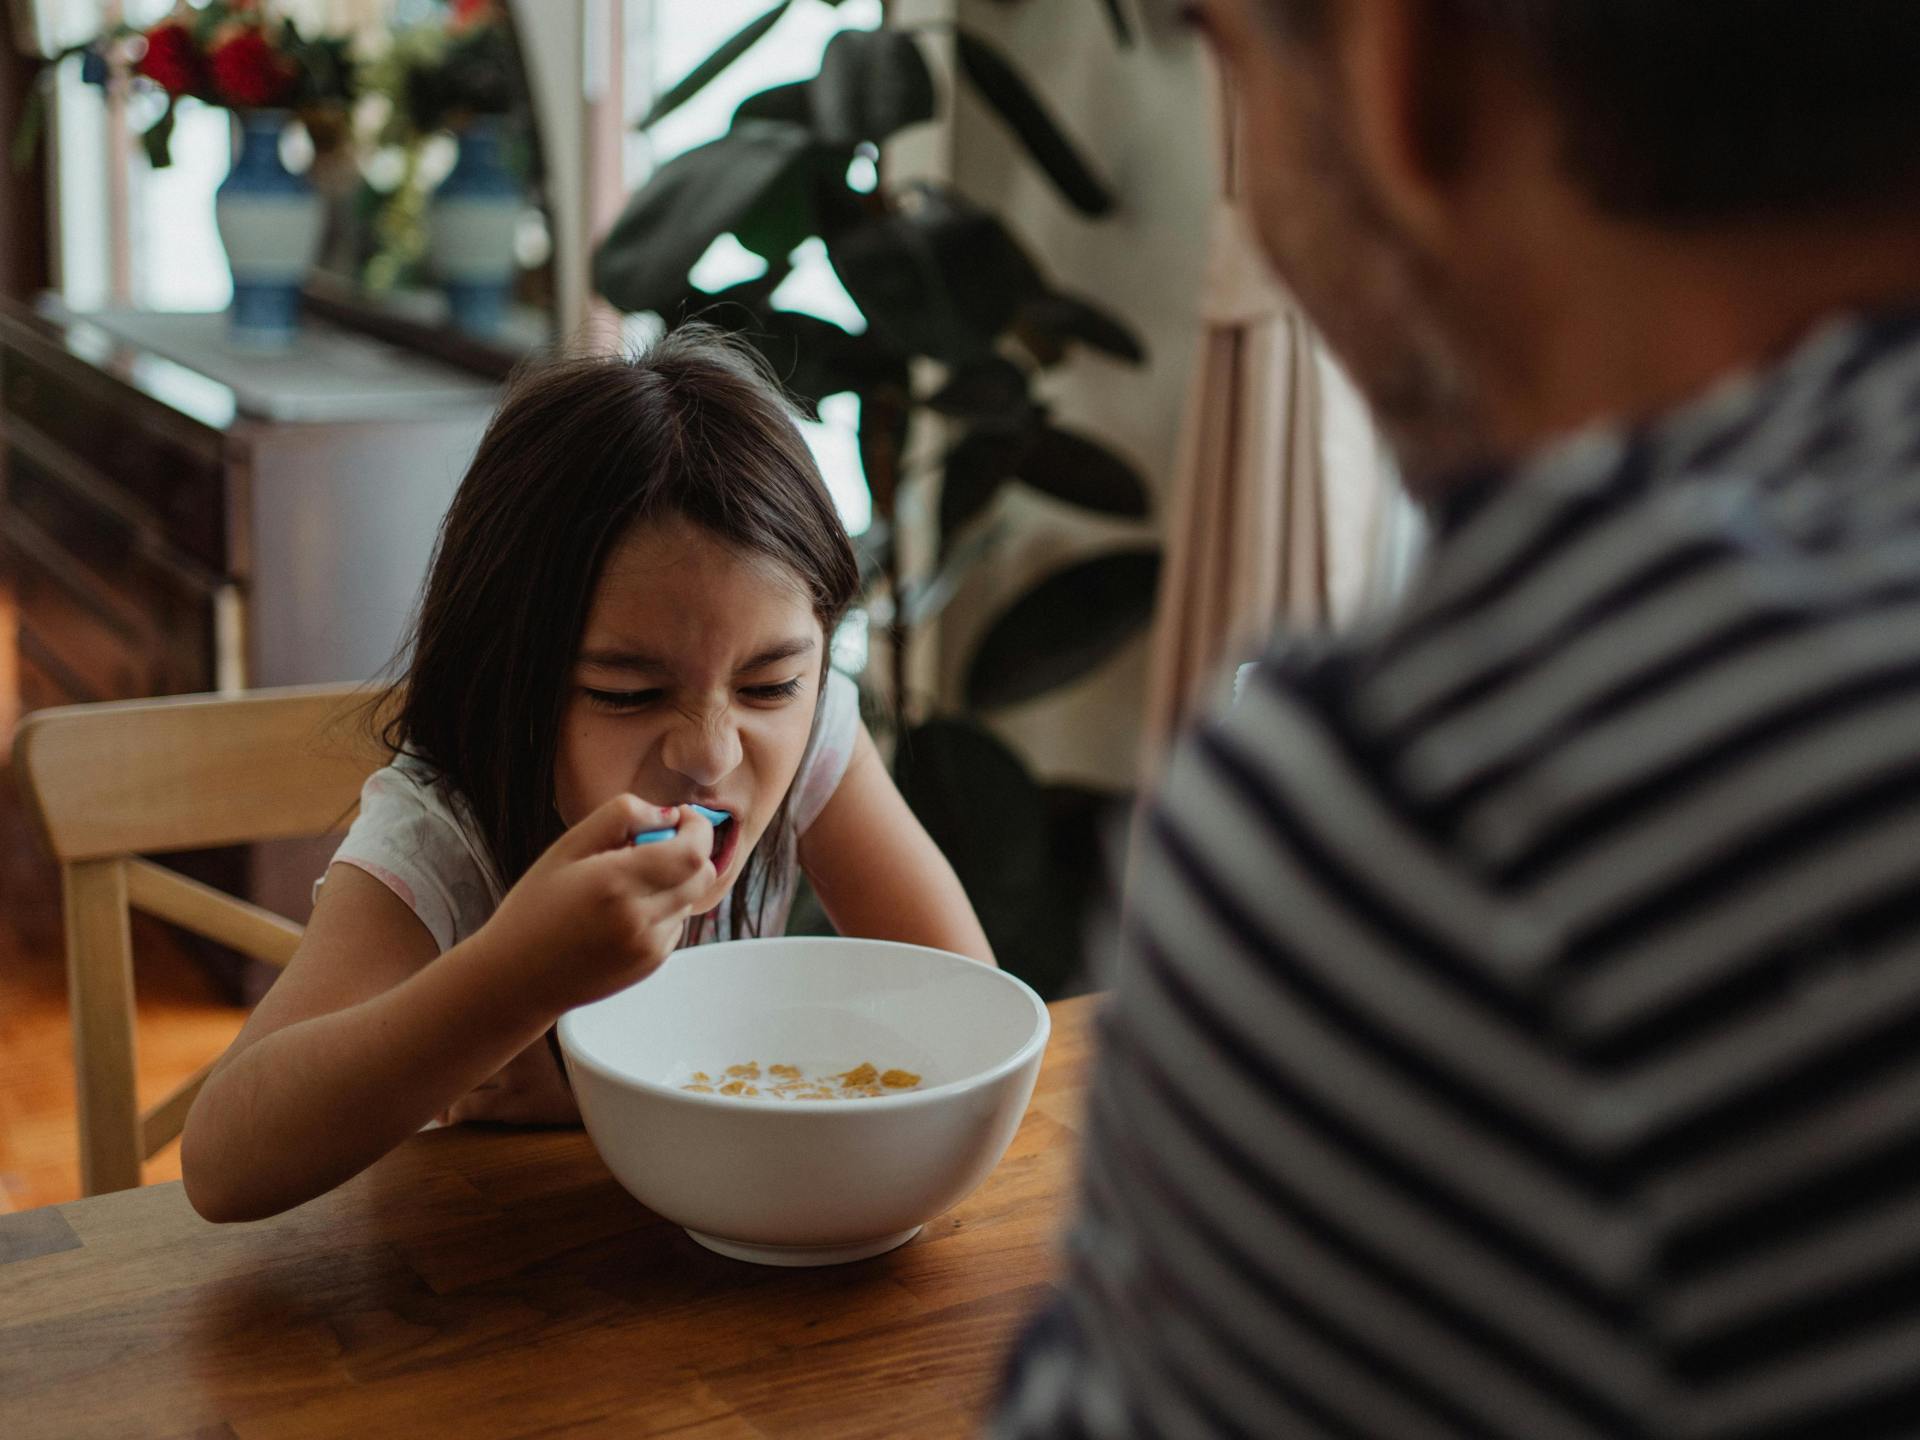 وجبة إفطار طفلك تحدد مستواه الدراسي.. وأنواع الطعام ليست سواء | أسرة – البوكس نيوز